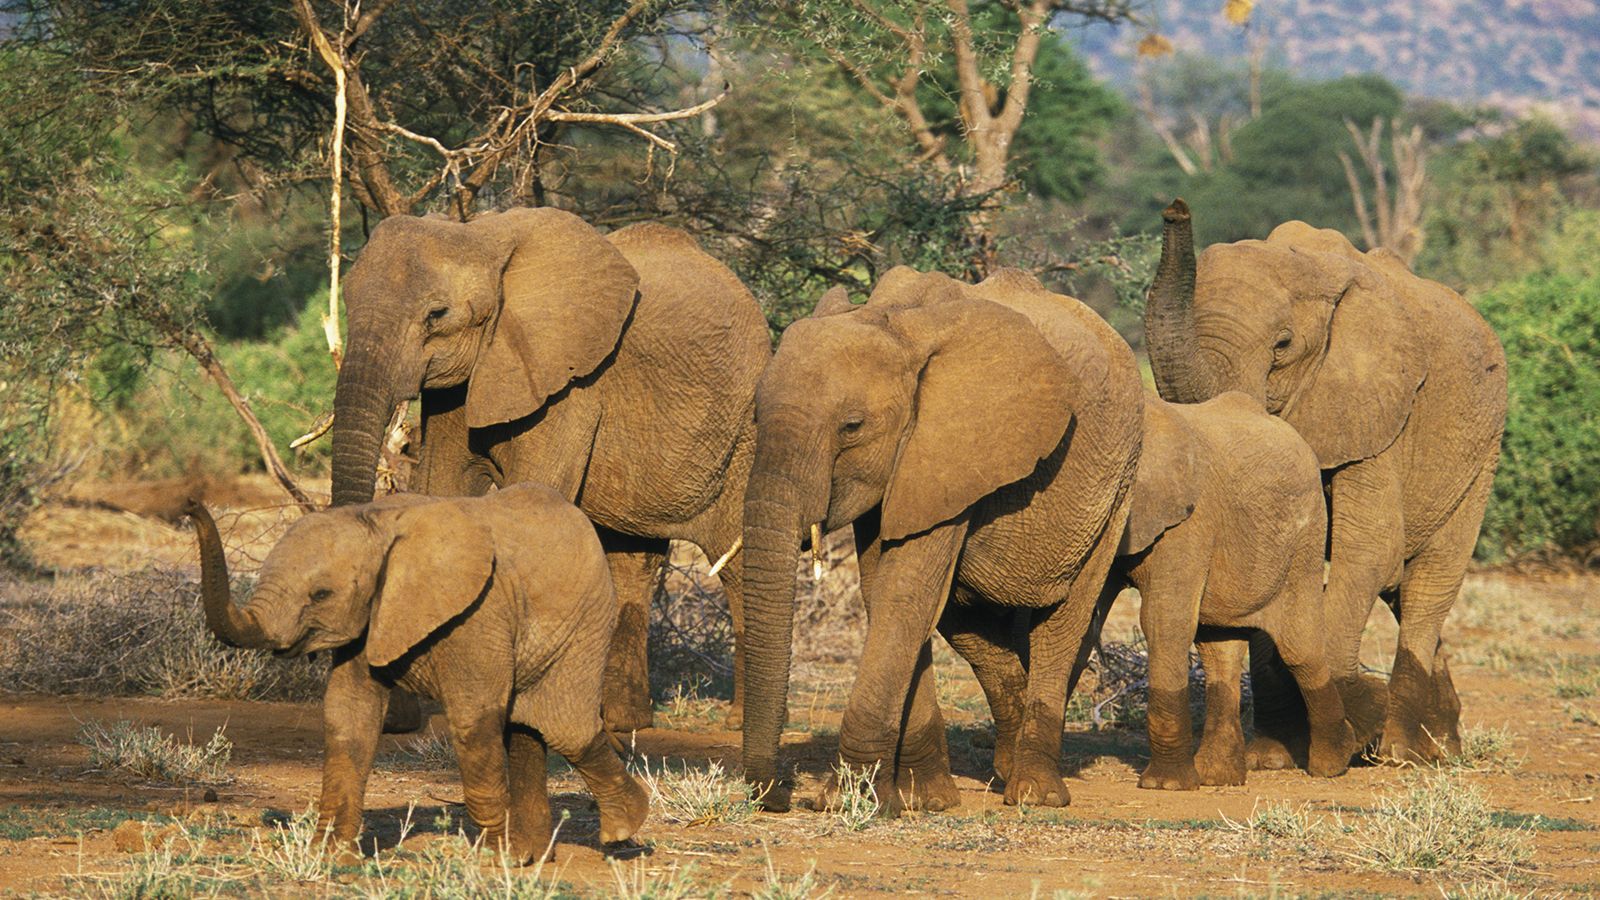 Elephants are big cats. Стадо слонов. Африканские и индийские слоны. Породы слонов с фотографиями и названиями.